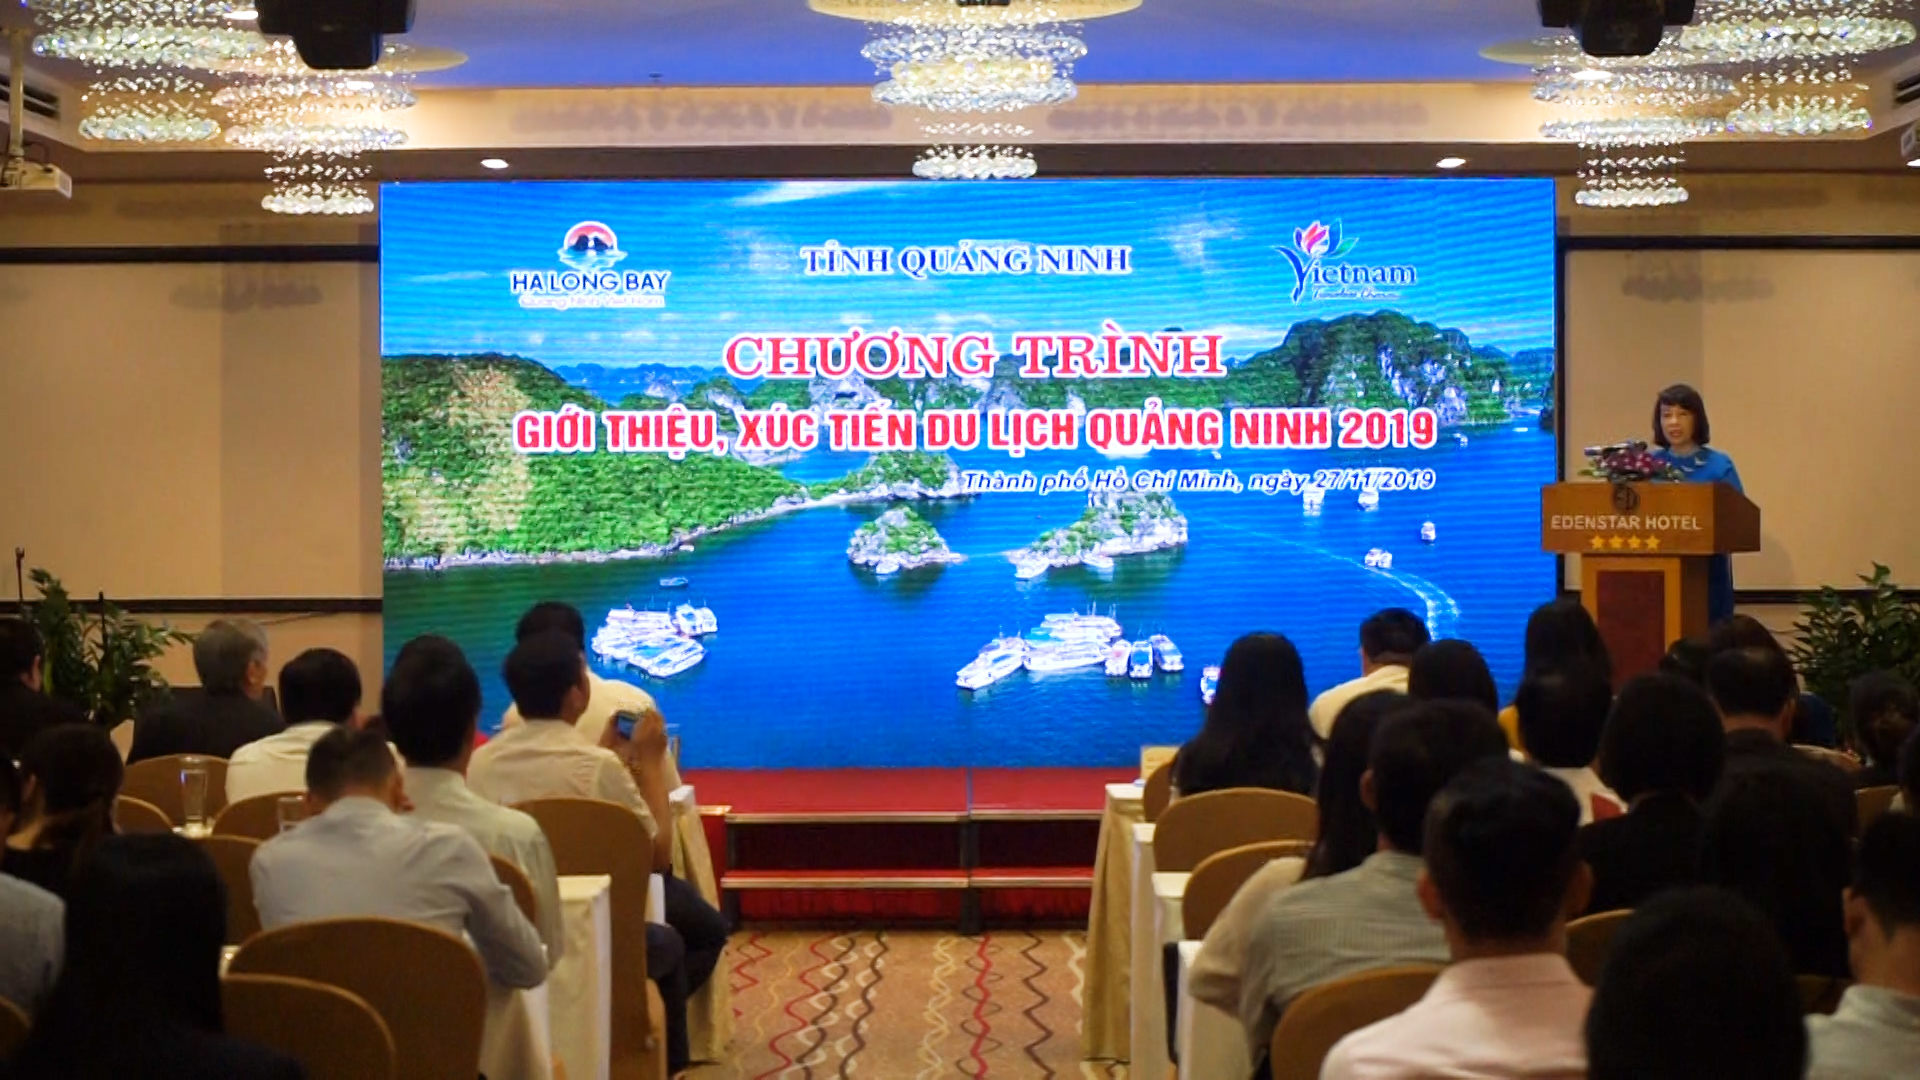 Đồng chí Vũ Thị Thu Thủy, Phó chủ tịch UBND tỉnh Quảng Ninh phát biểu tại chương trình xúc tiến du lịch tỉnh Quảng Ninh - TP Hồ Chí Minh